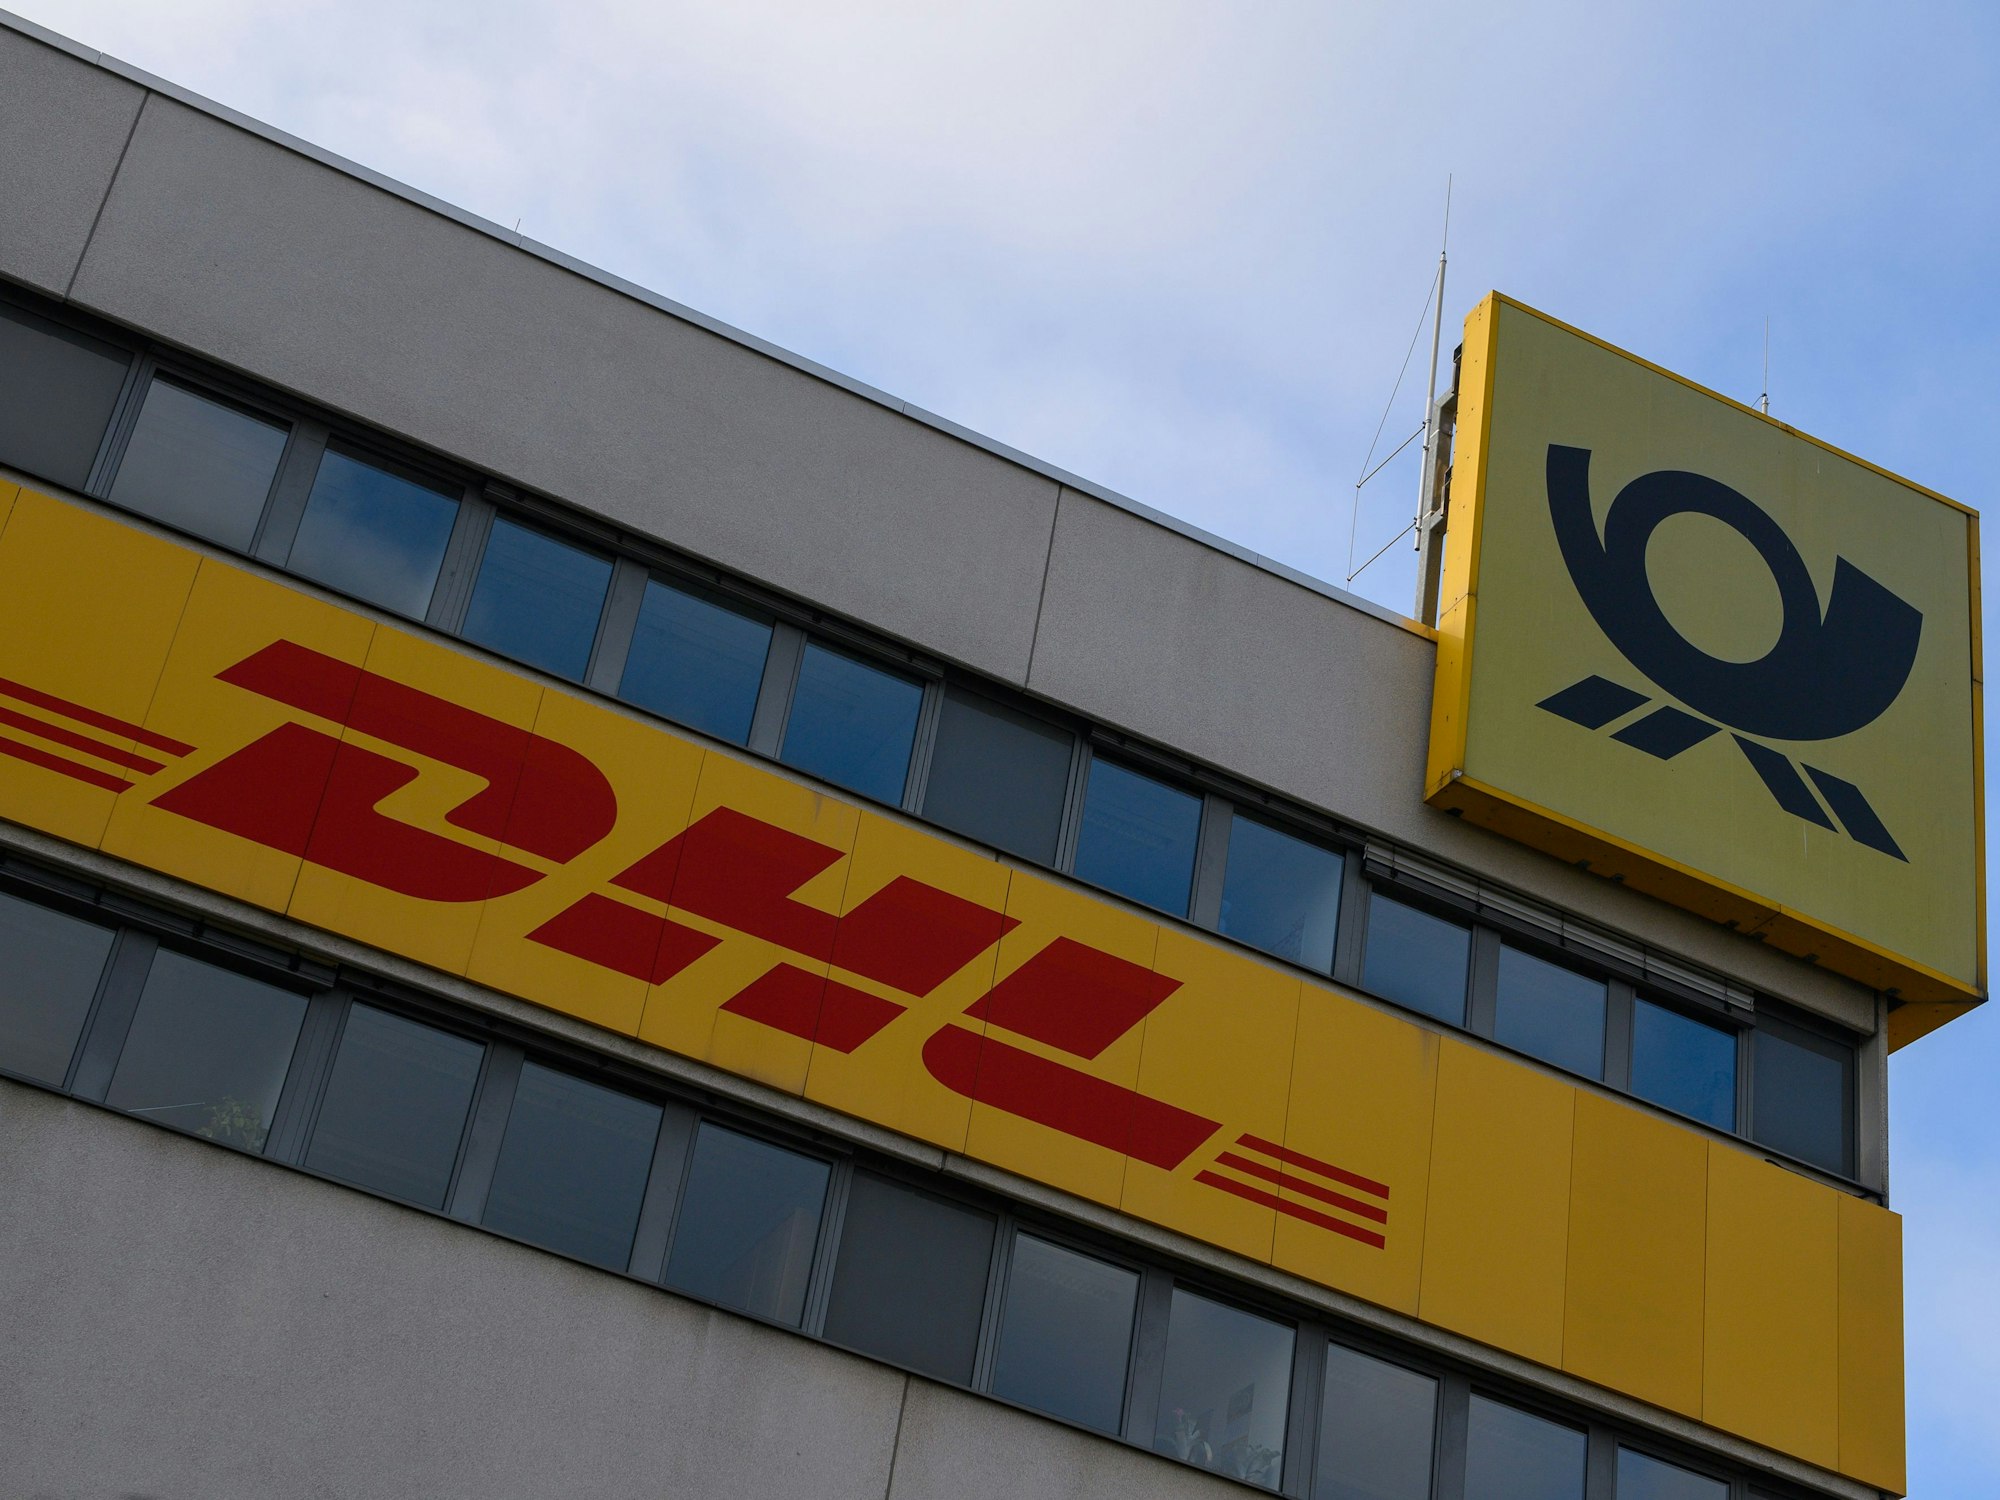 „DHL“ und das Logo der Deutschen Post ist an der Fassade des DHL Paketzentrums, hier in Magdeburg im November 2022, zu sehen. In Berlin teilte ein DHL-Kurier auf einem Zettel eine kuriose Botschaft mit.